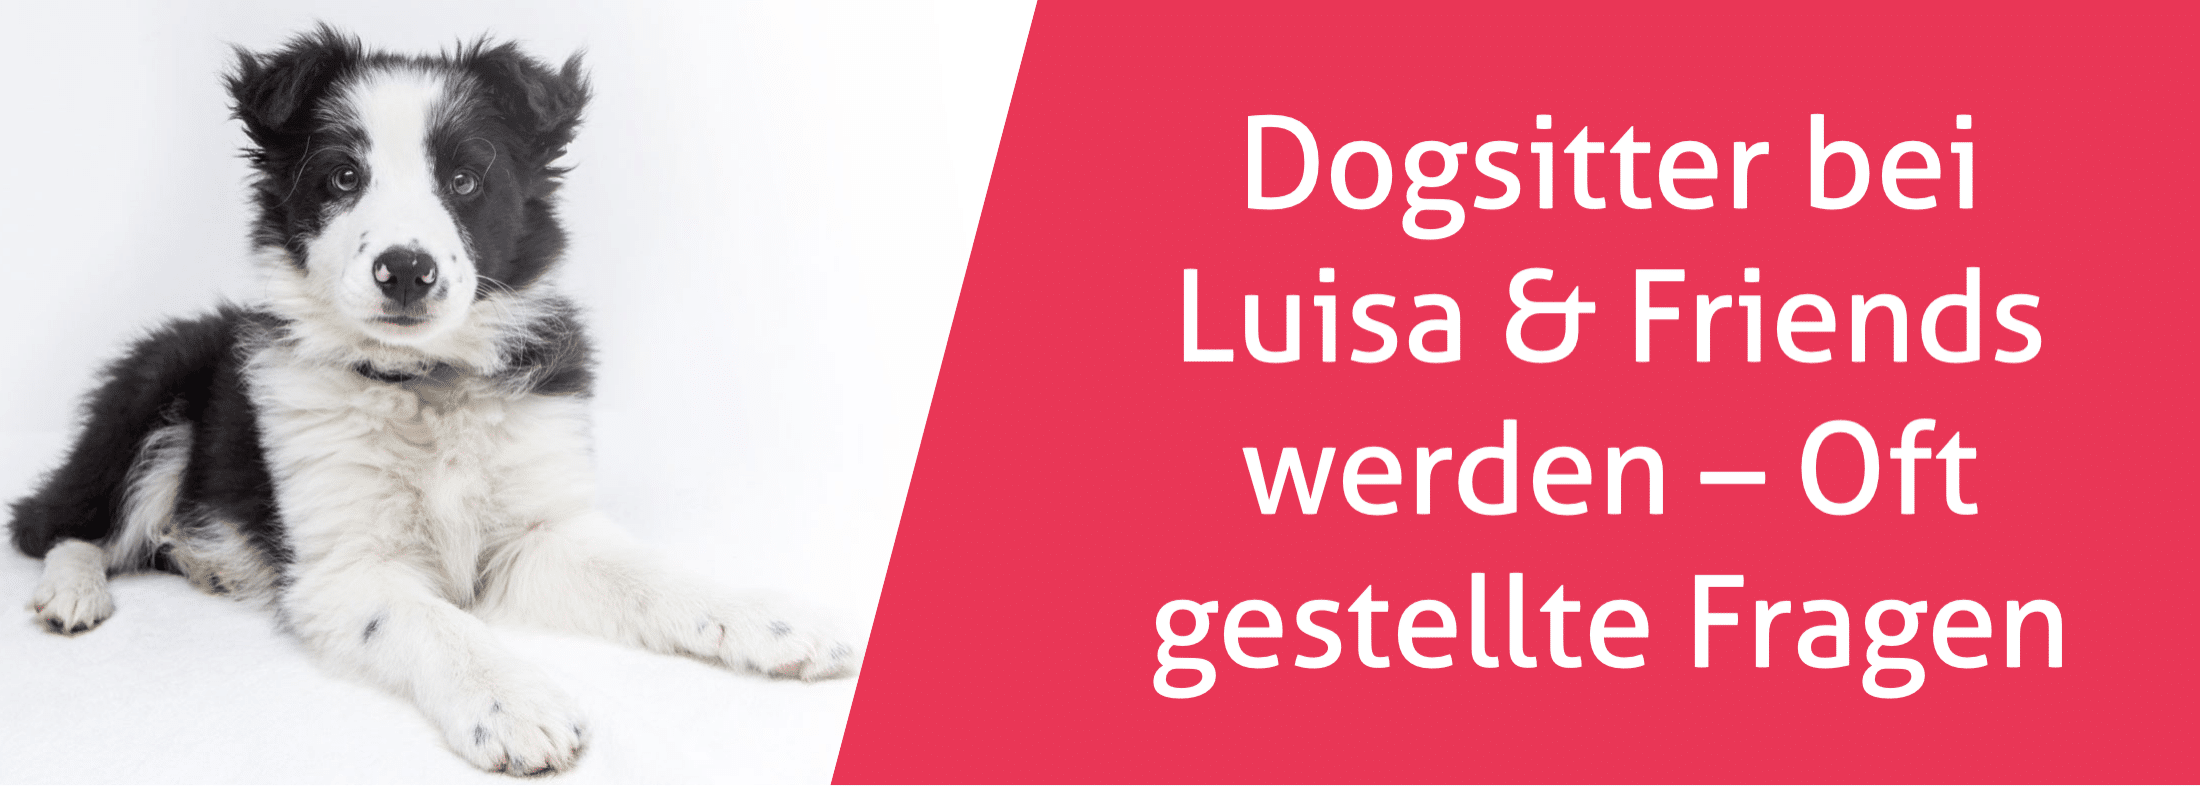 Dogsitter bei Luisa & Friends werden - Oft gestellte Fragen